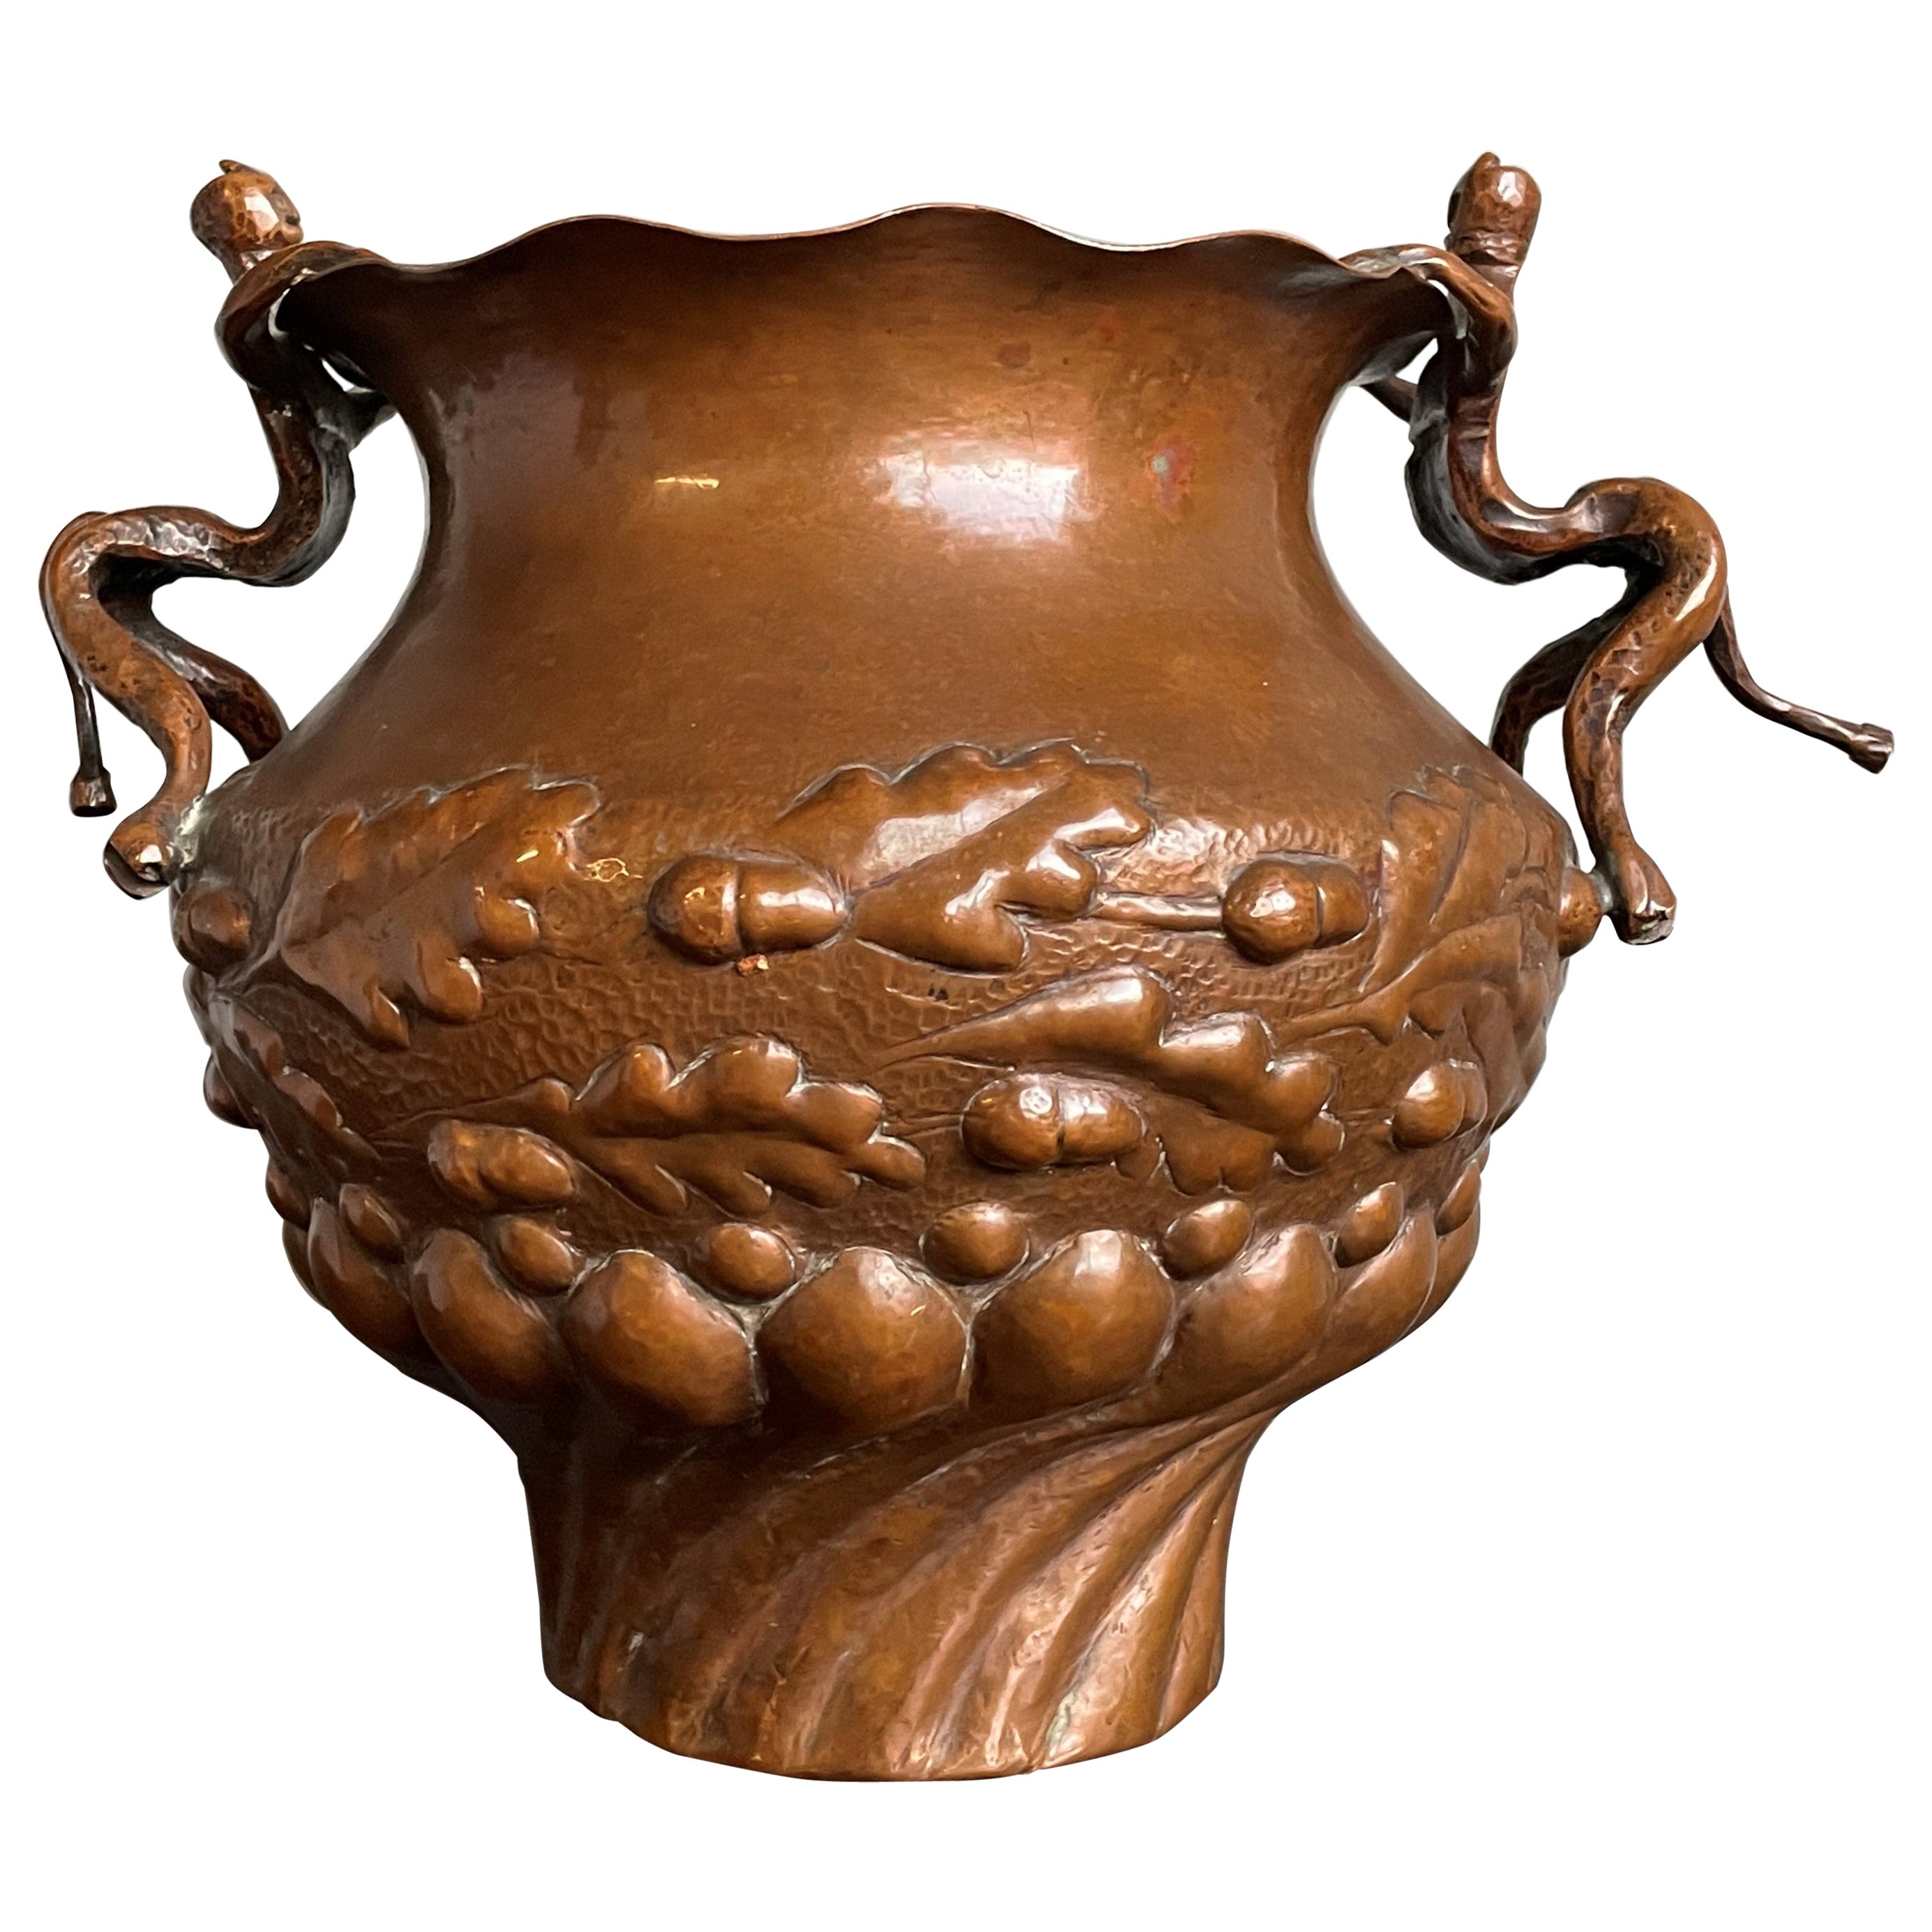 Einzigartiges Pflanzgefäß/Vase aus geprägtem Kupfer mit Satyr-Skulpturen als Griffe aus der Mitte der 1800er Jahre